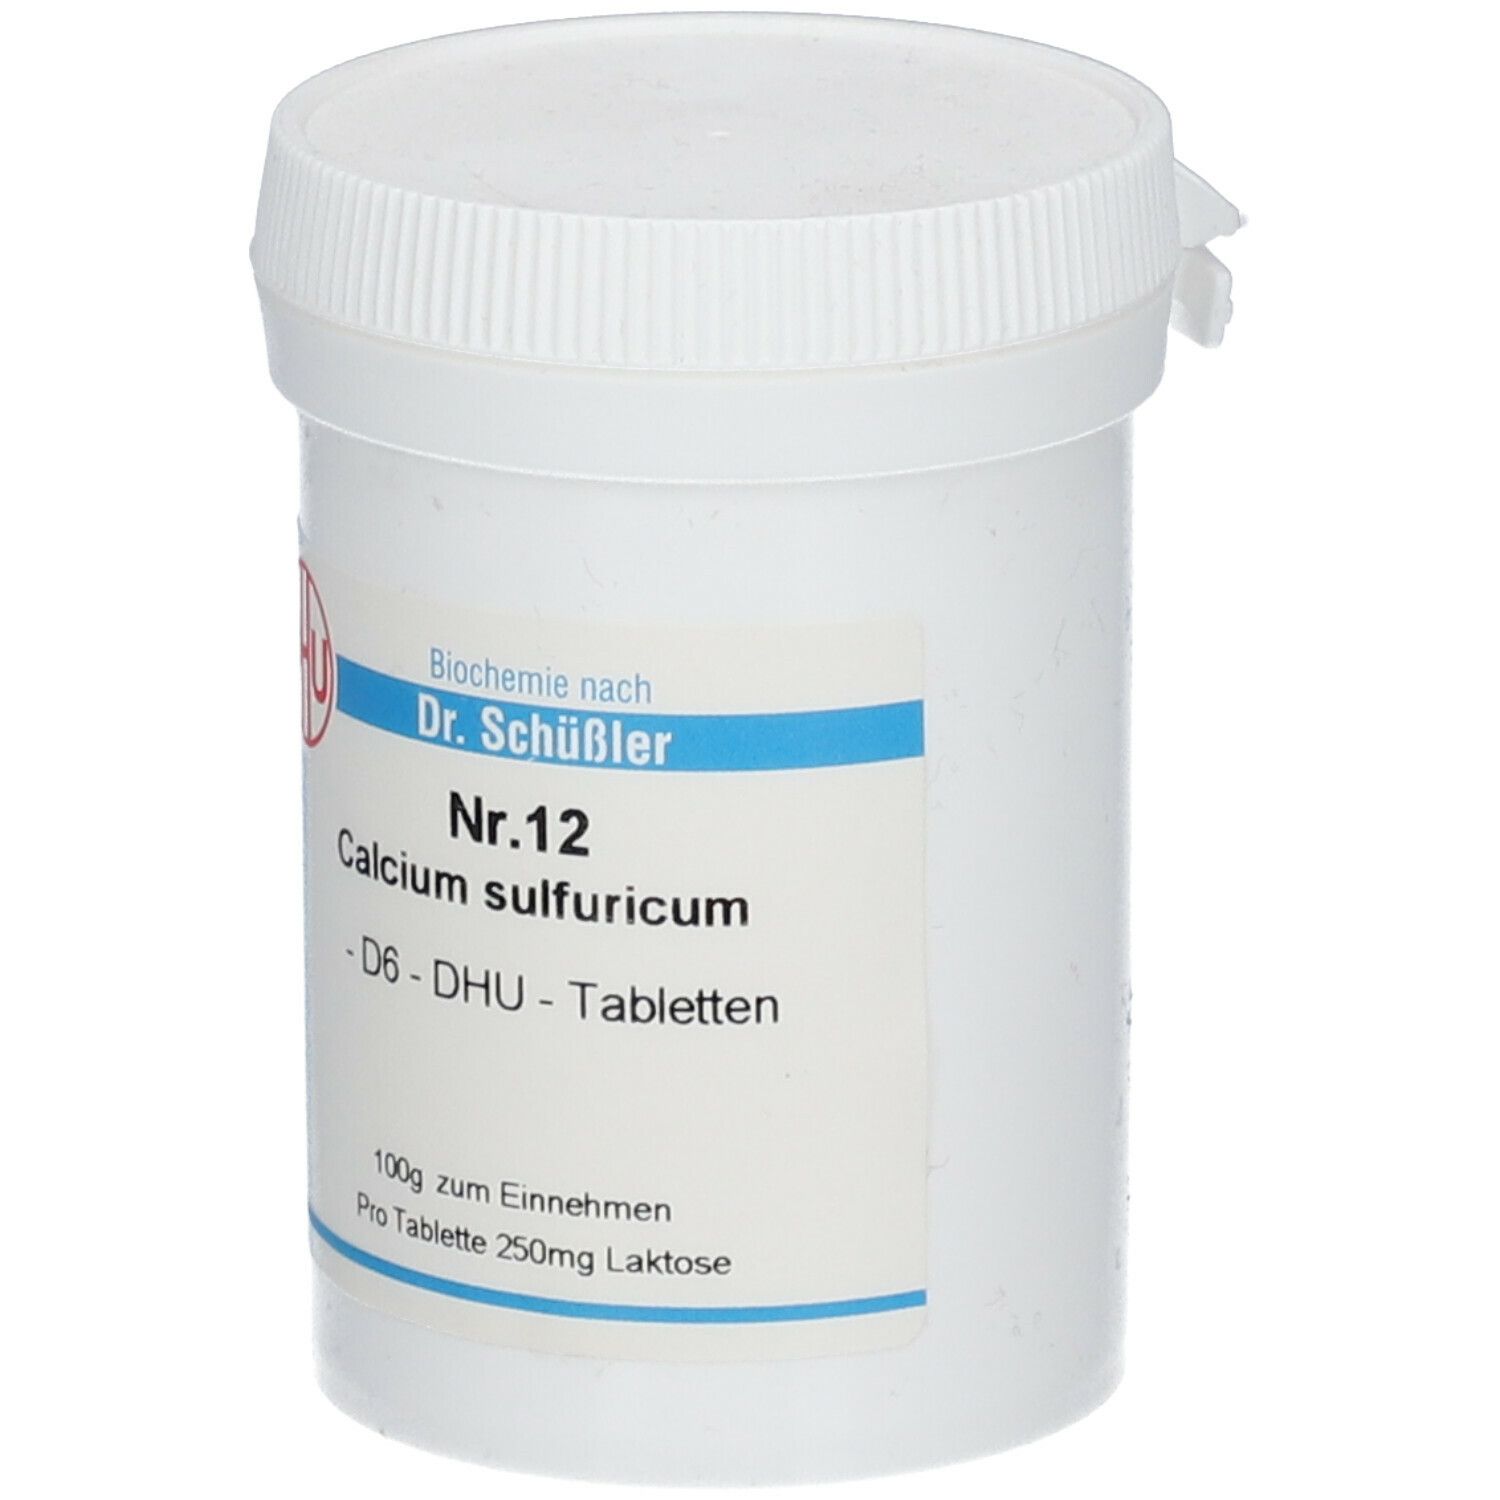 DHU Nr. 12 Calcium sulfuricum D6 nach Dr. Schüßler